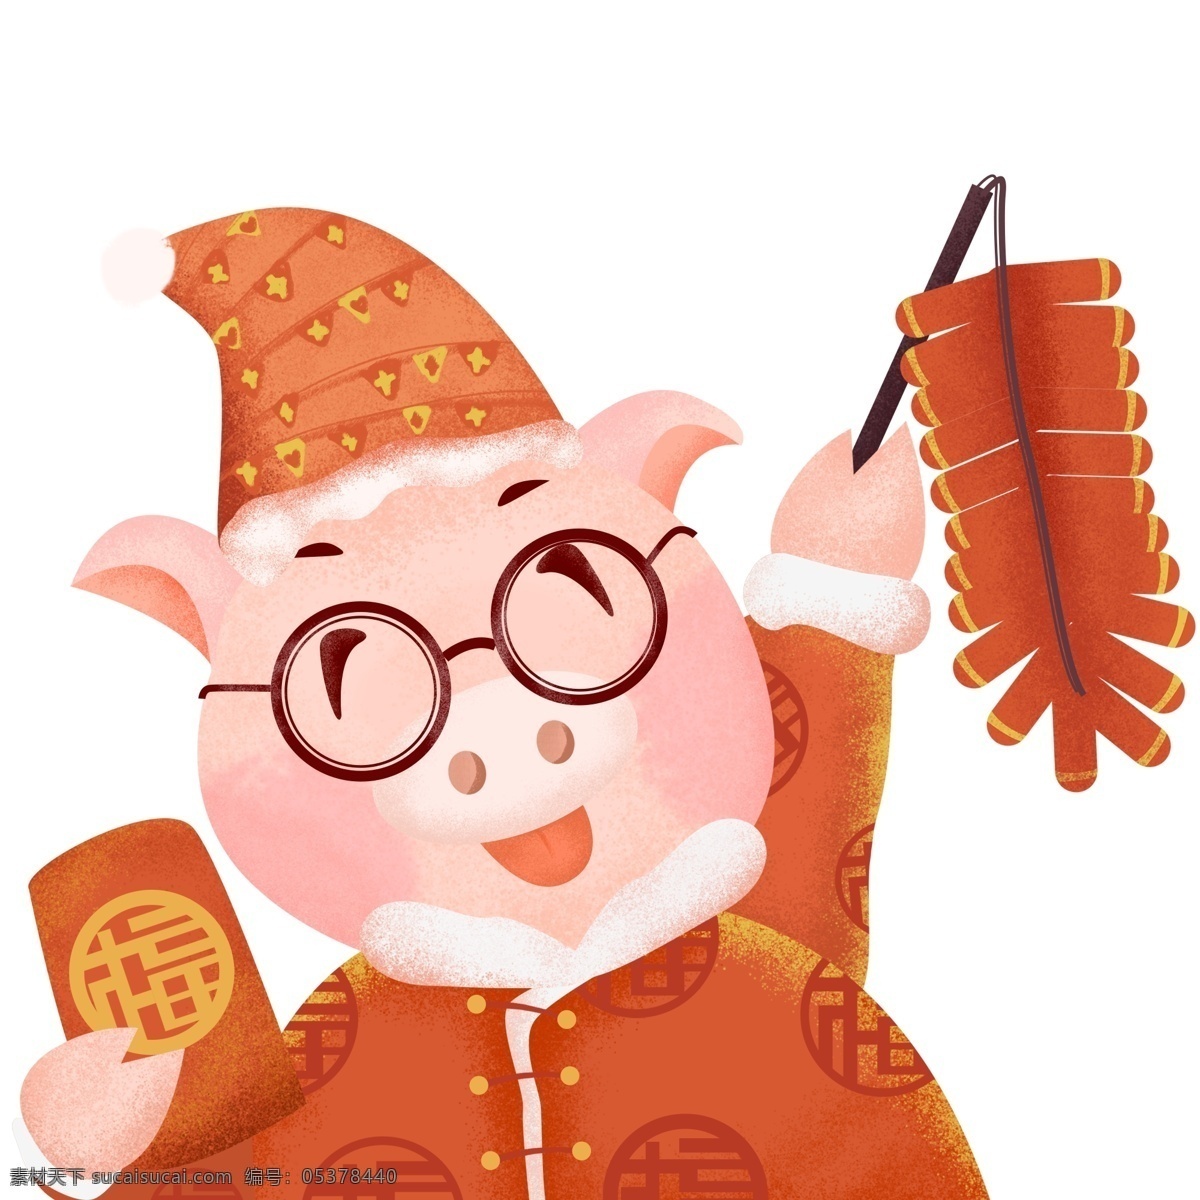 过年 鞭炮 红包 小 猪 喜庆 插画 春节元素 2019年 新年 猪年 小猪形象 猪年形象 手绘